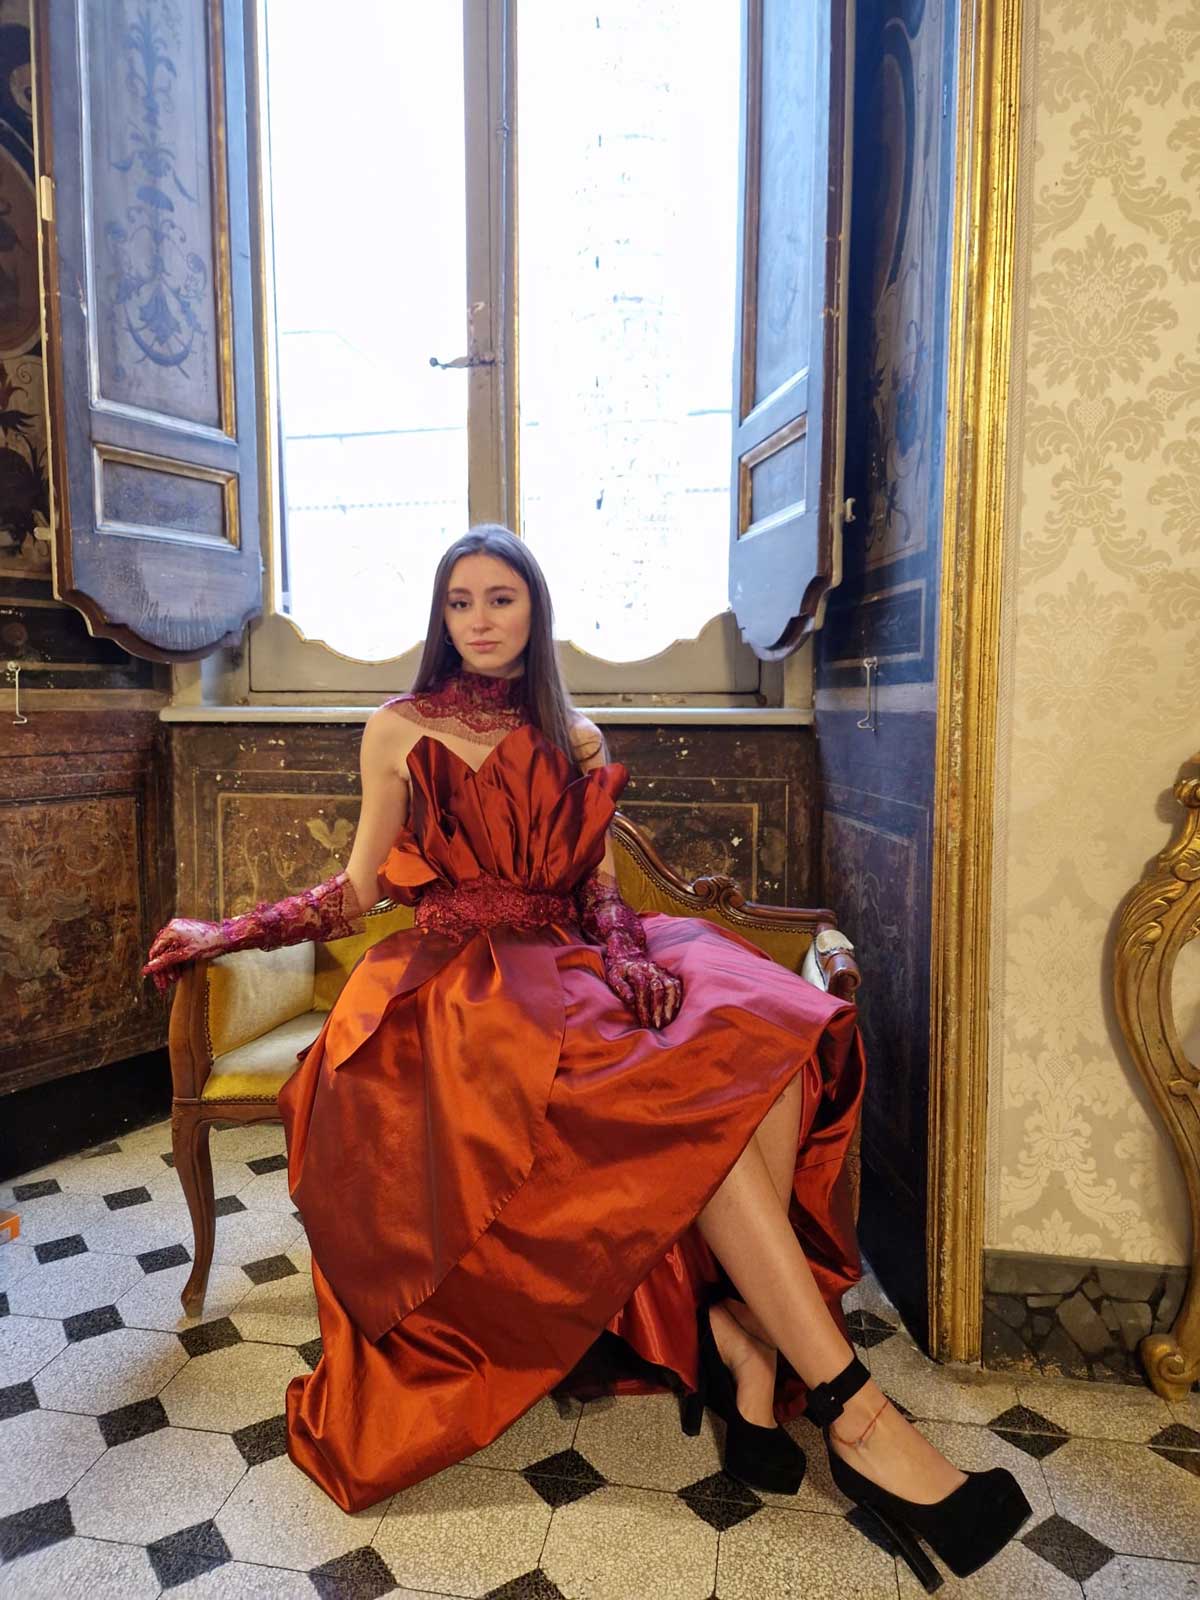 Mod’Art Roma - Il fascino dei colori - sfilata modelle nello storico Palazzo Ferrajoli - ragazza vestita in rosso bruno